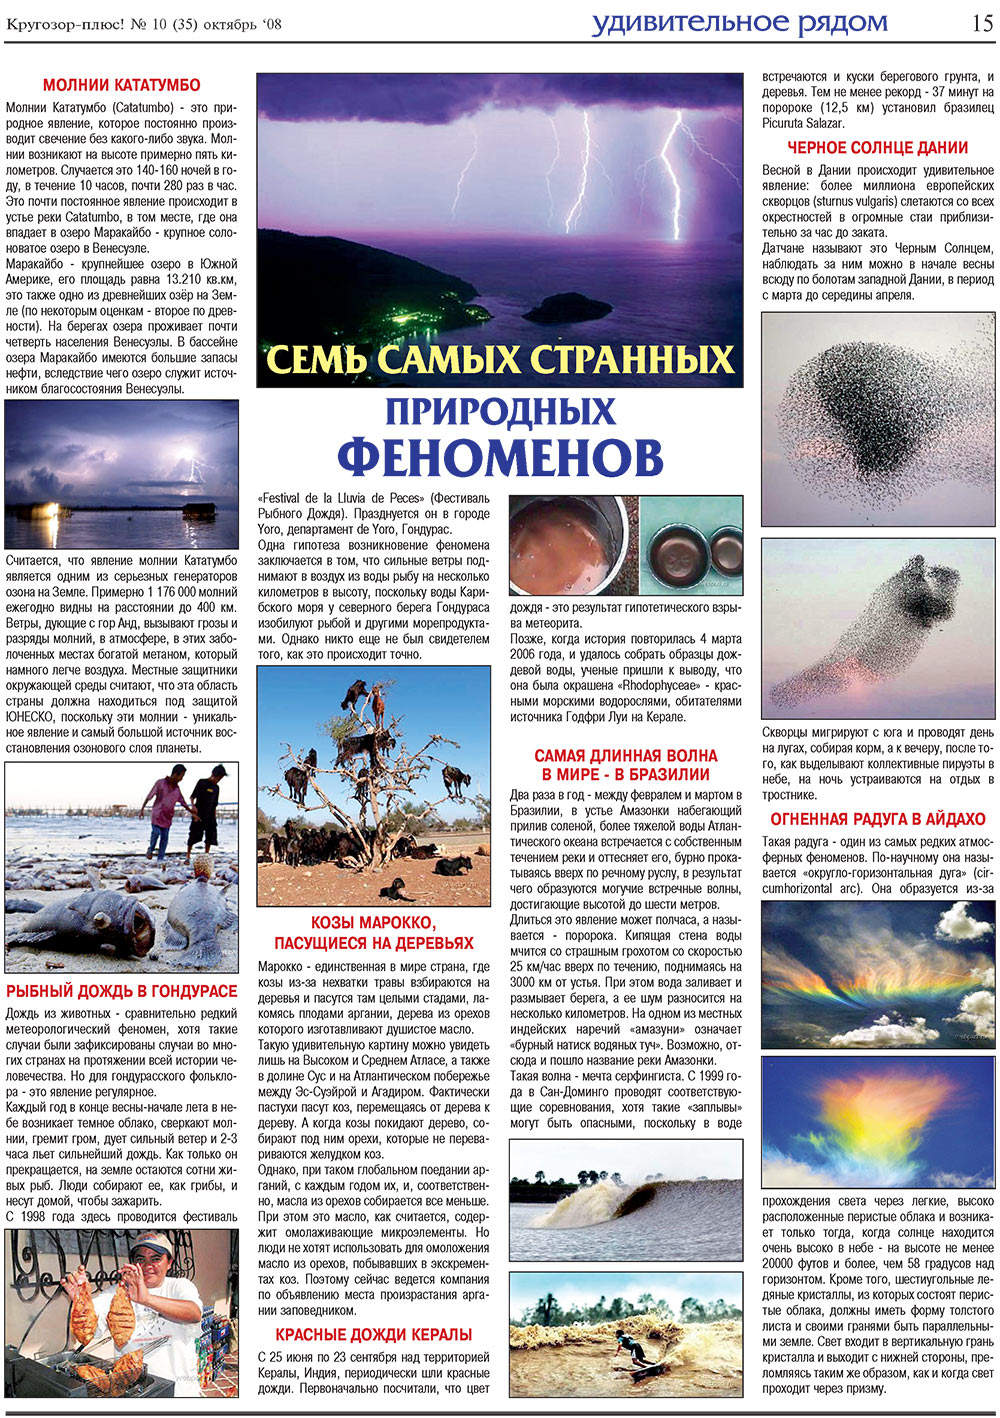 Кругозор плюс!, газета. 2008 №10 стр.15